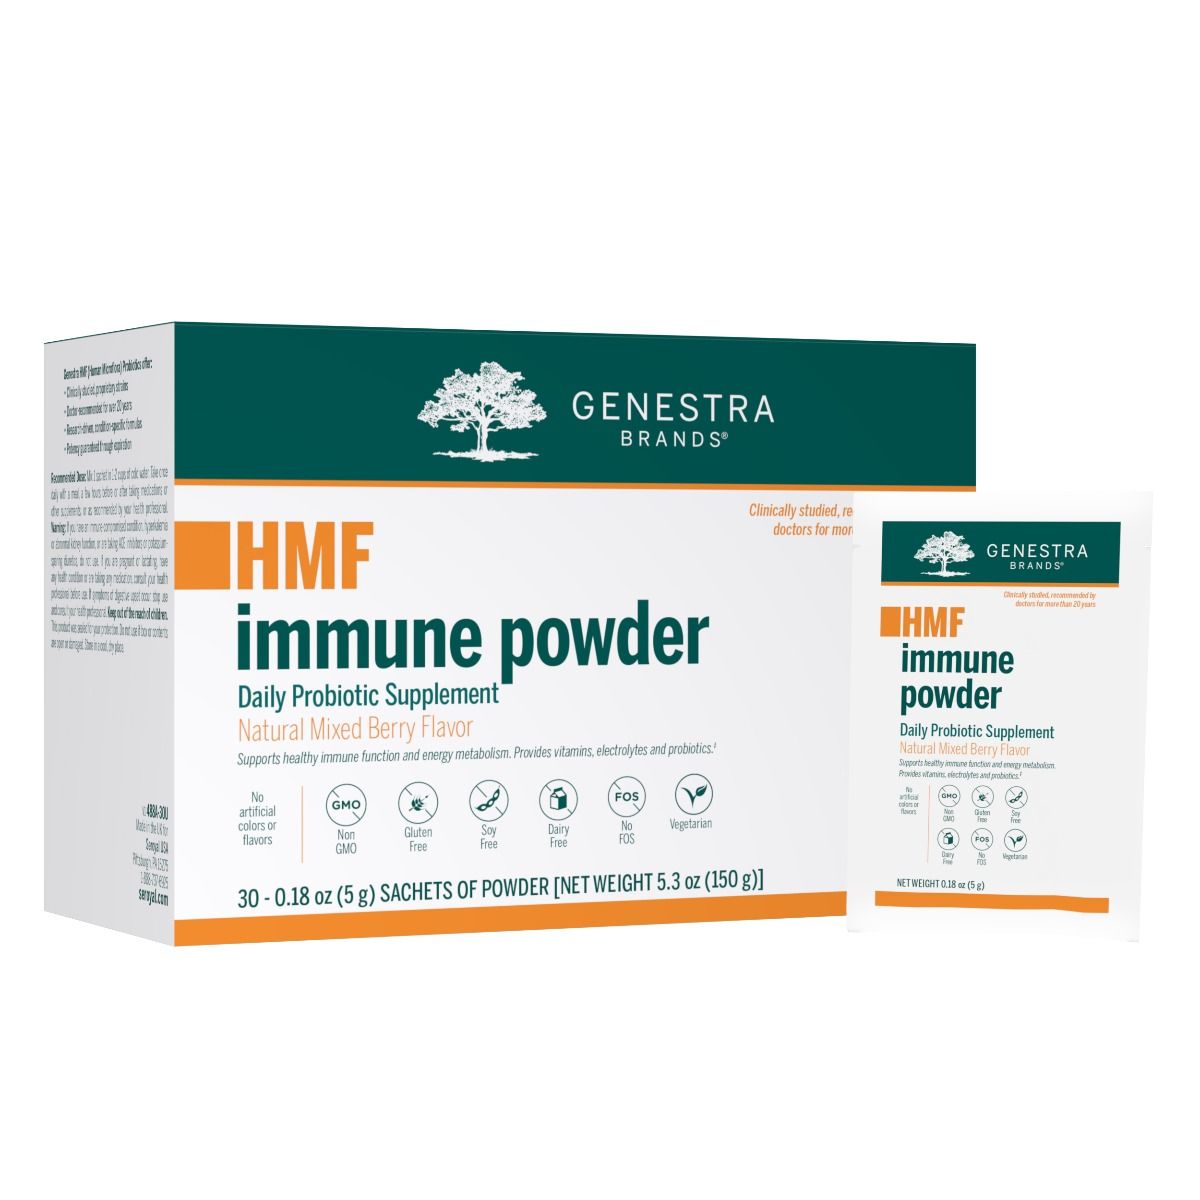 HMF Immune Powder - USA only